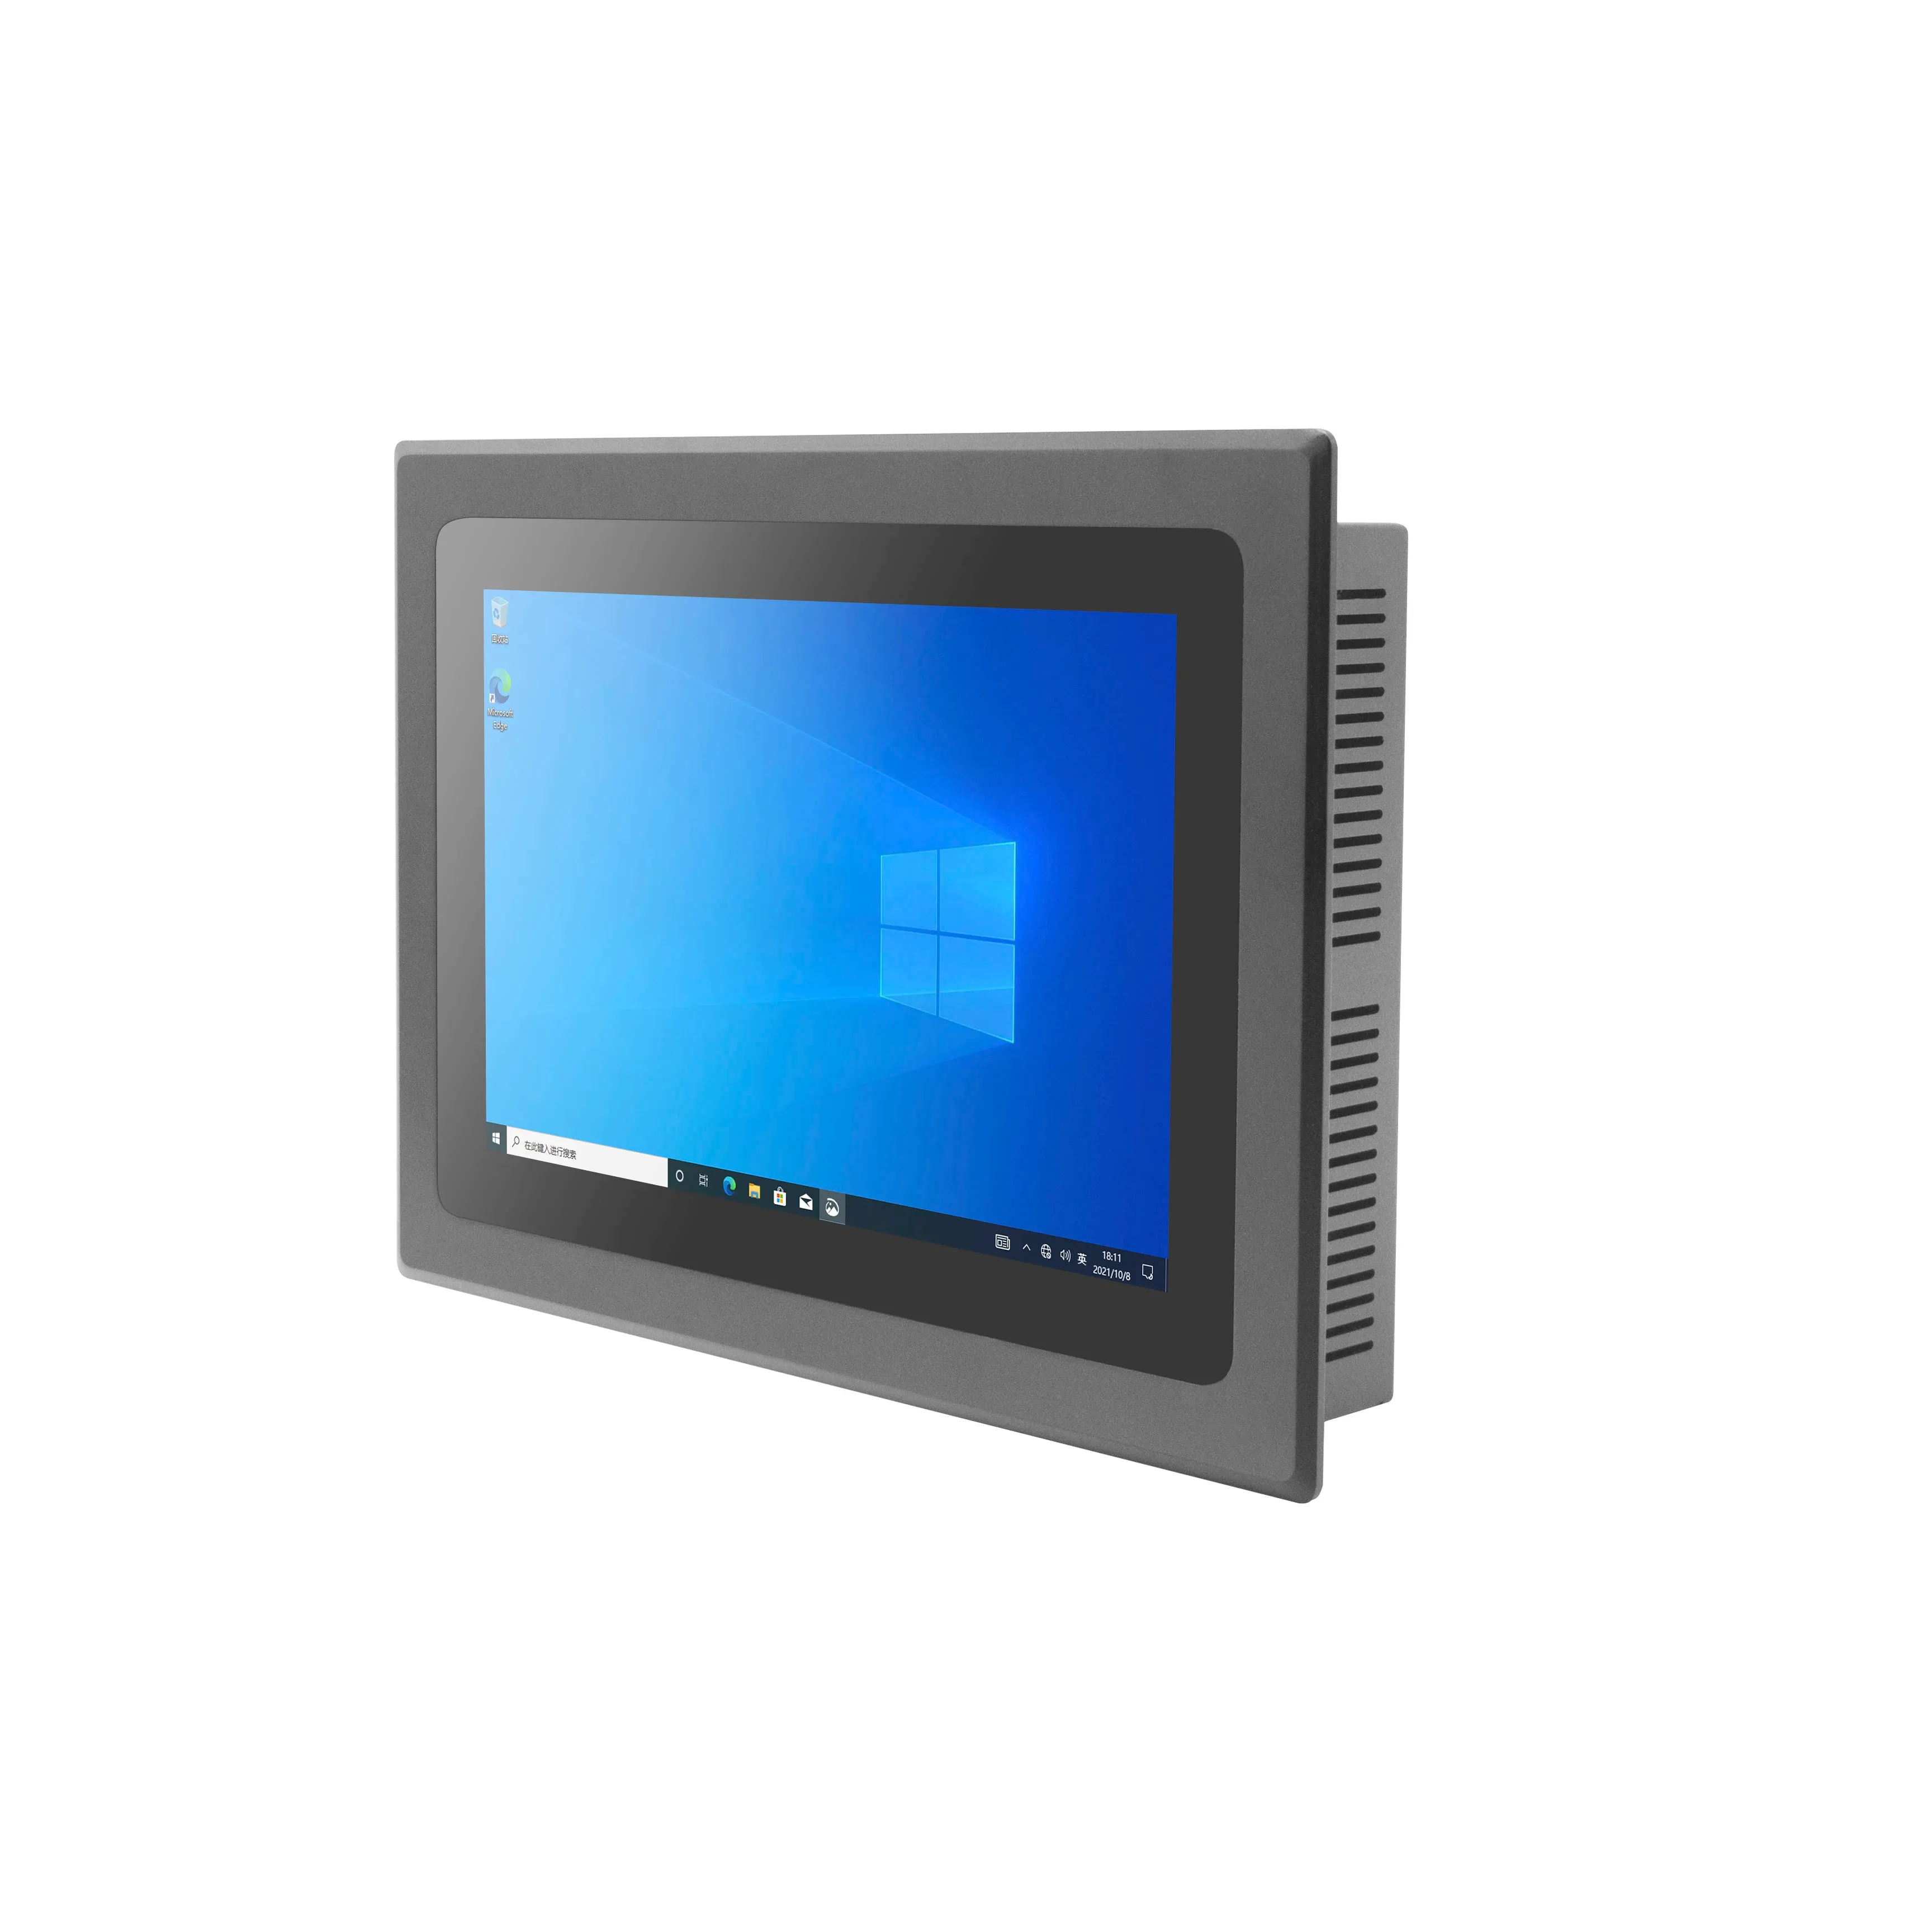 Panel PC industriel sans ventilateur de 10.1 à 21.5 pouces Panel PC industriel intégré tout en un Win10/Linux avec écran tactile capacitif